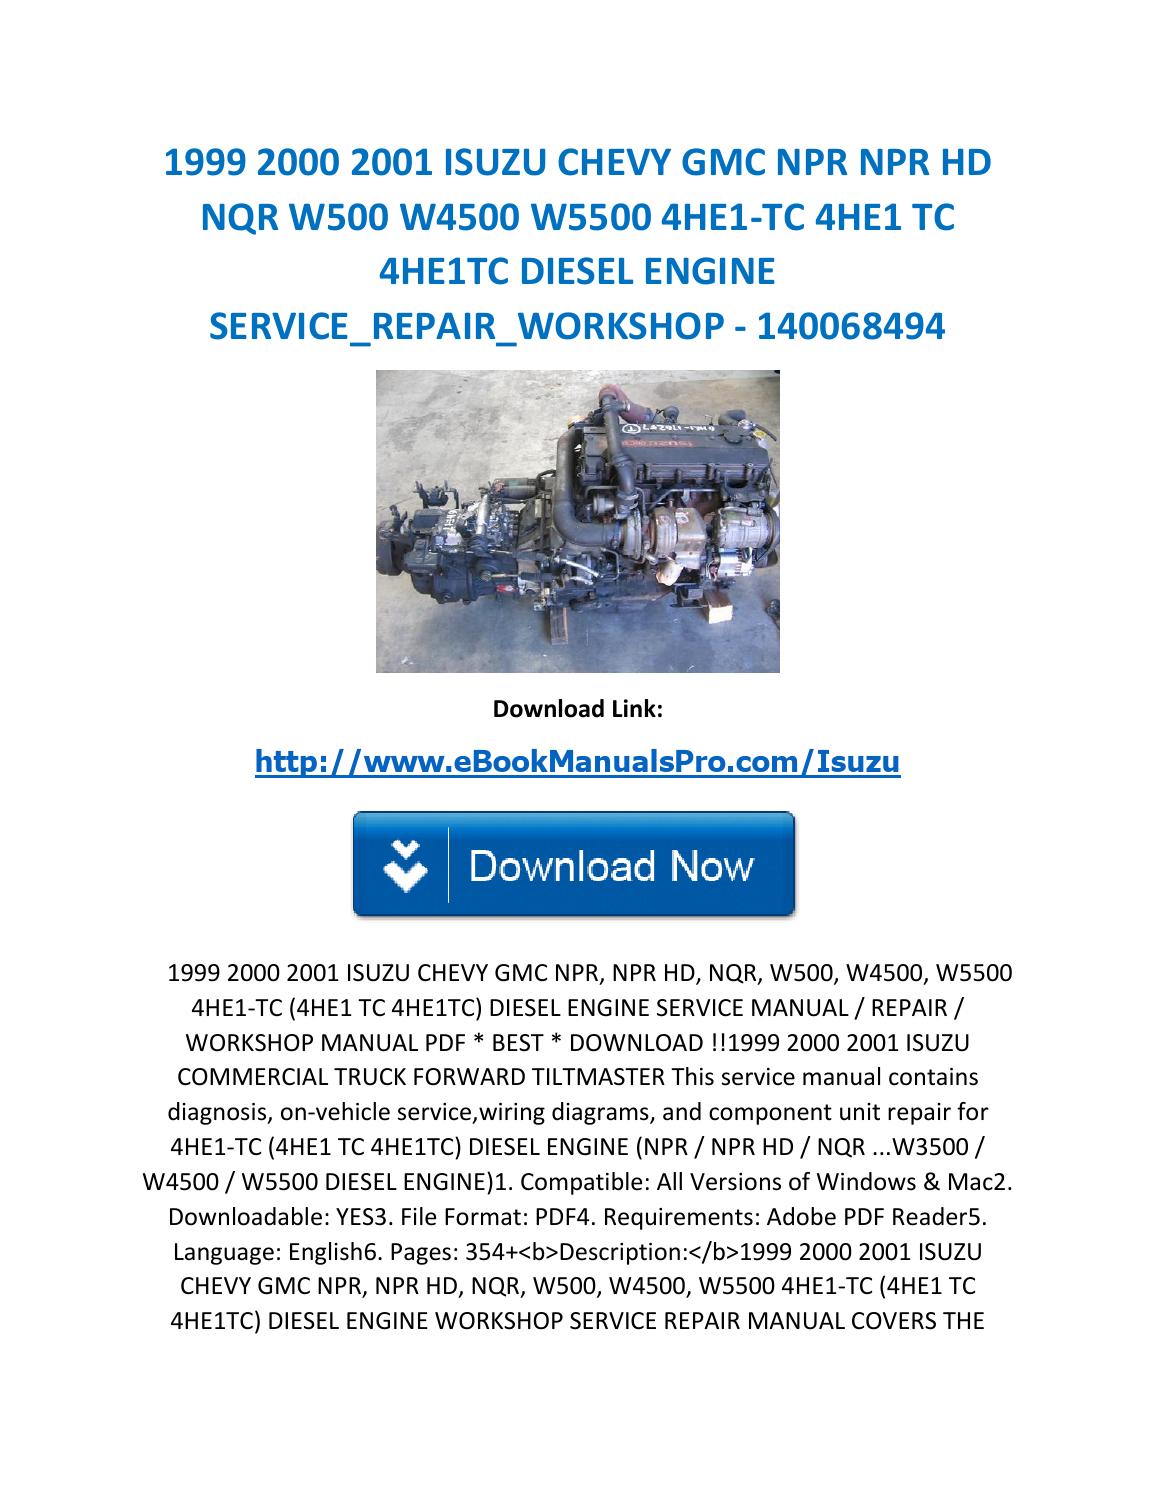 Isuzu 4ja1 workshop manual free download